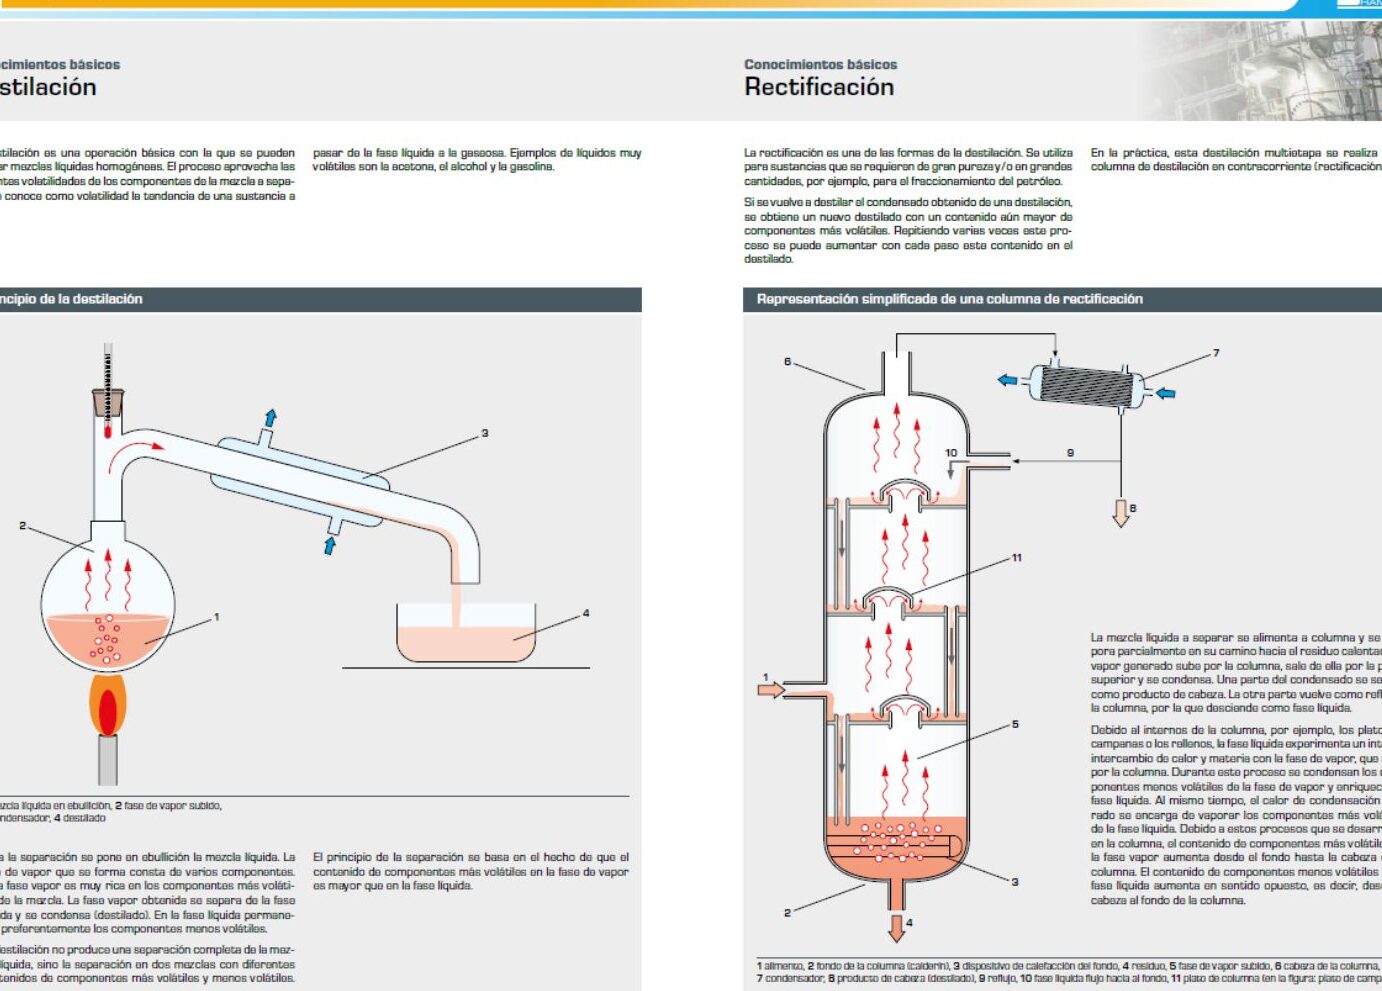 Diagrama de destilación: Un paso a paso para la separación de líquidos.